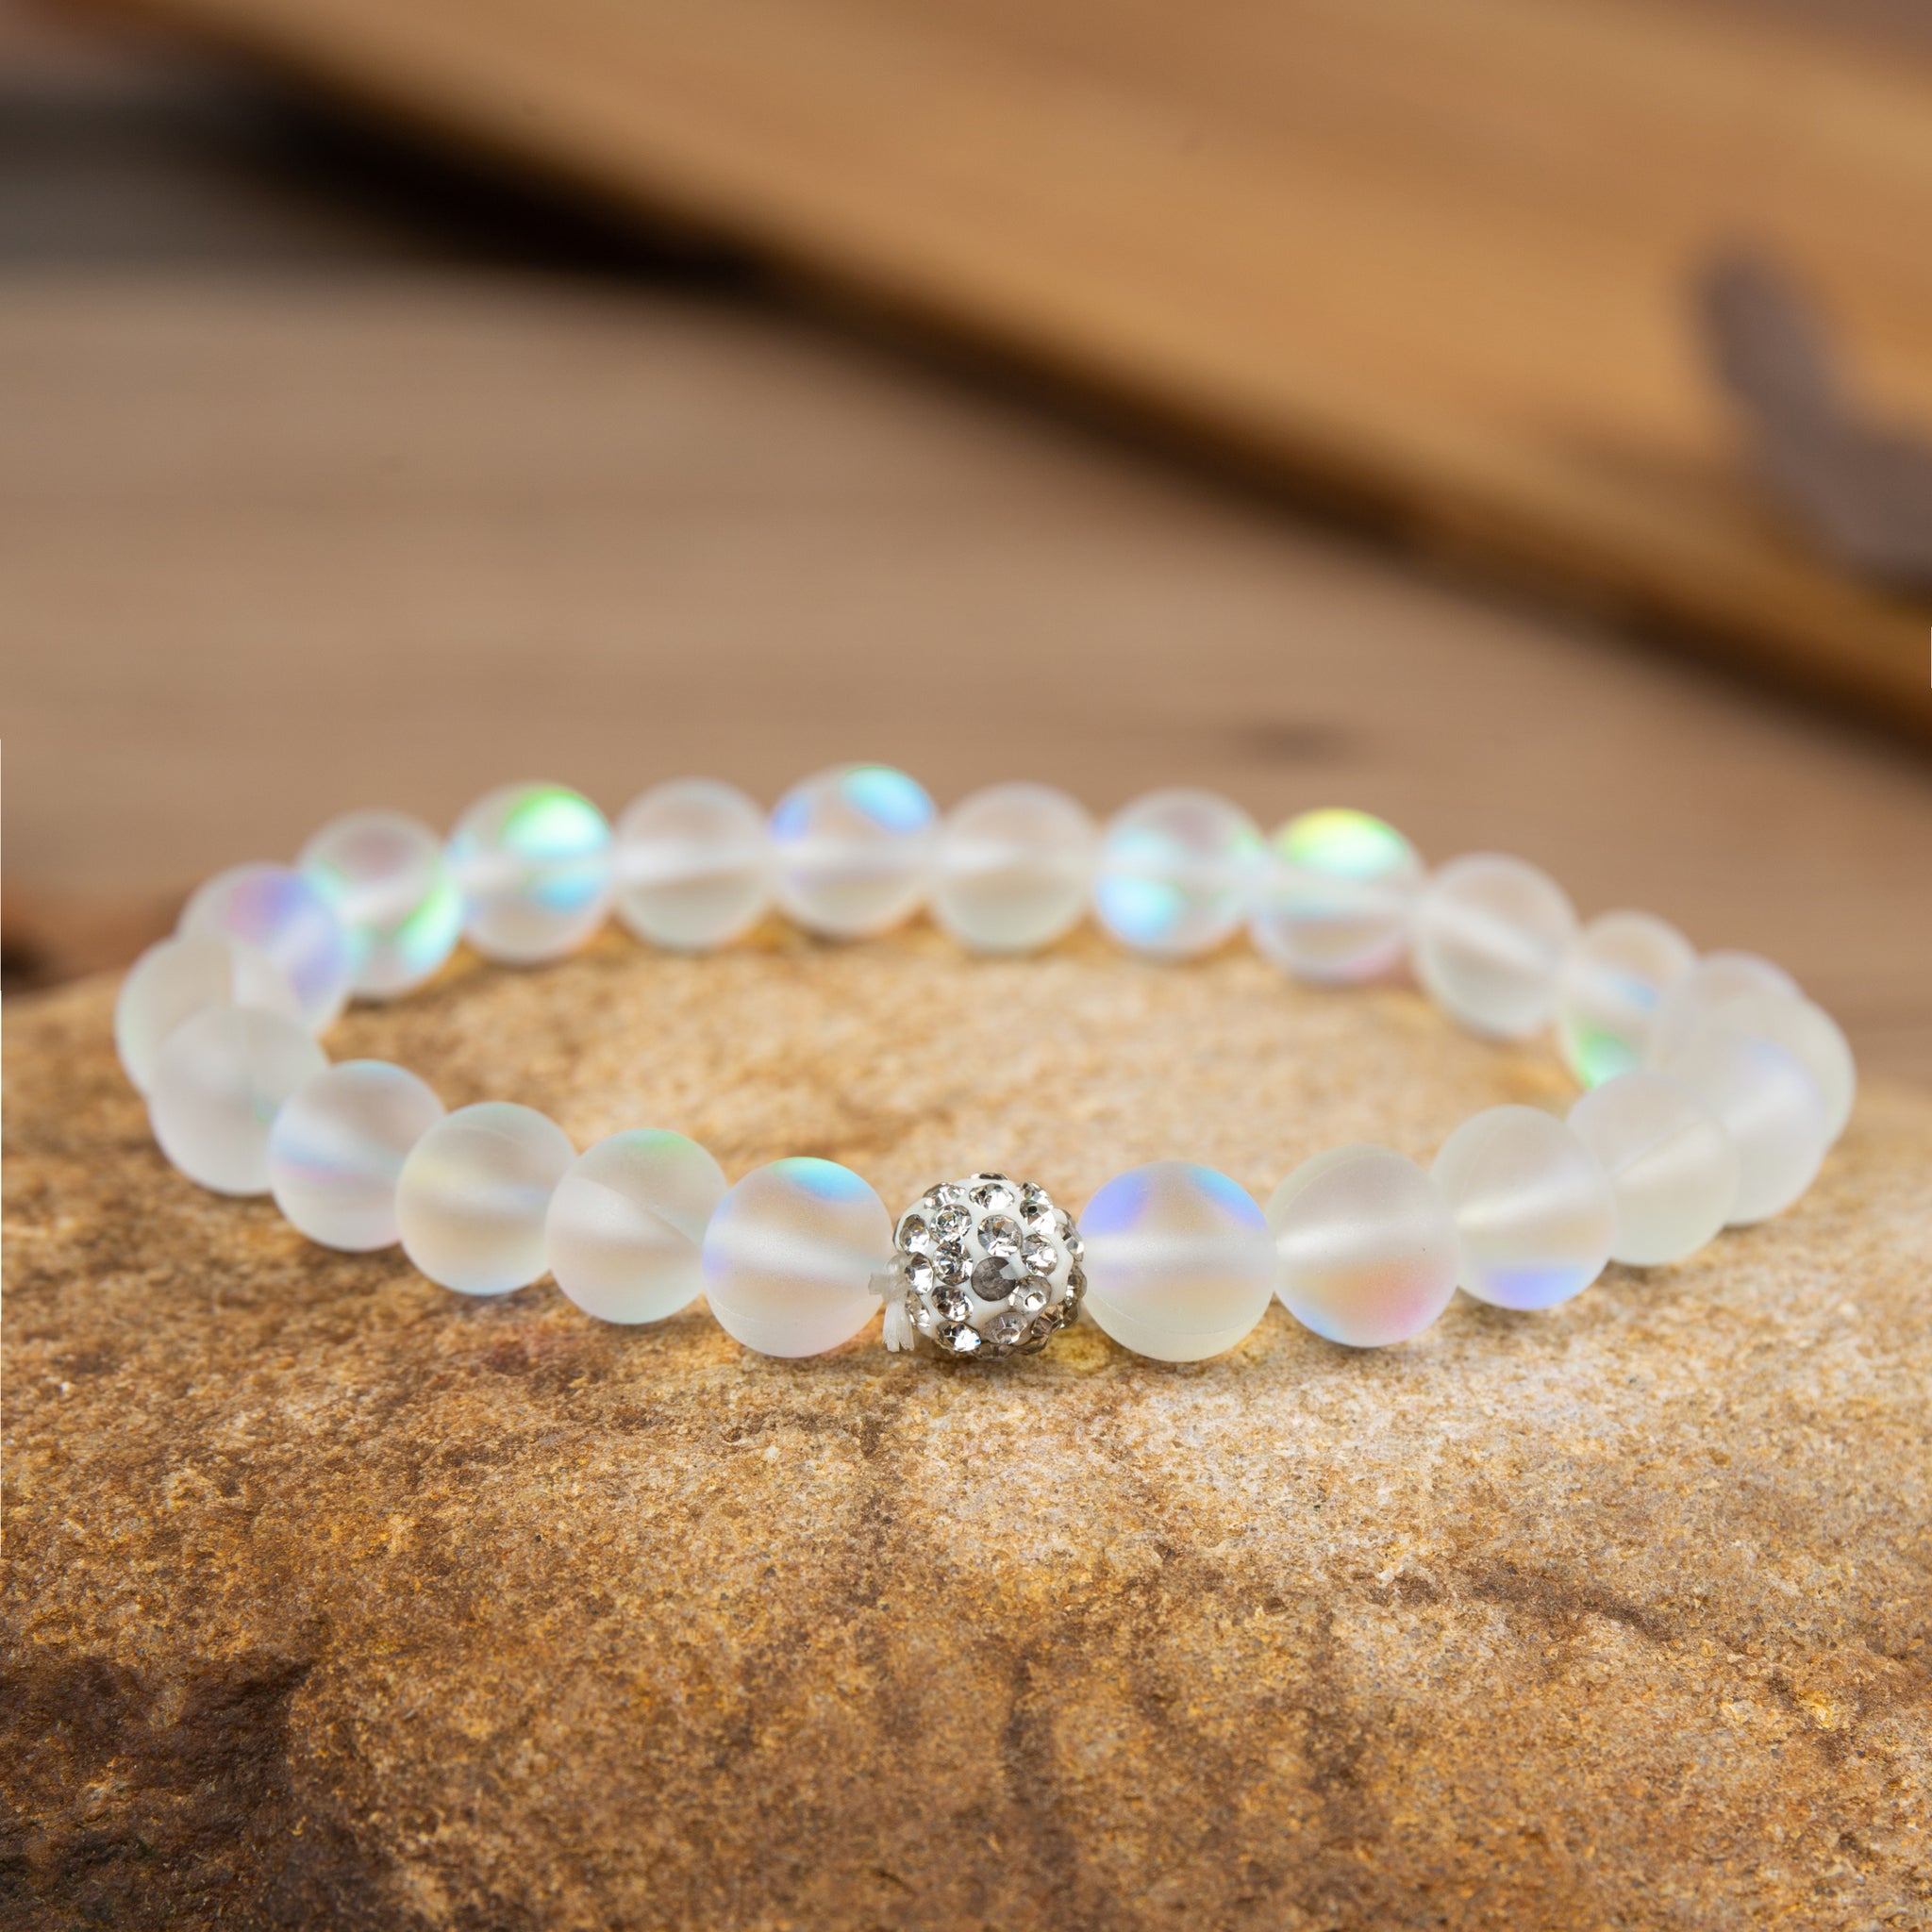 NEW!!! Mermaid Glass & Onyx Zodiac Sign Empathy Beads